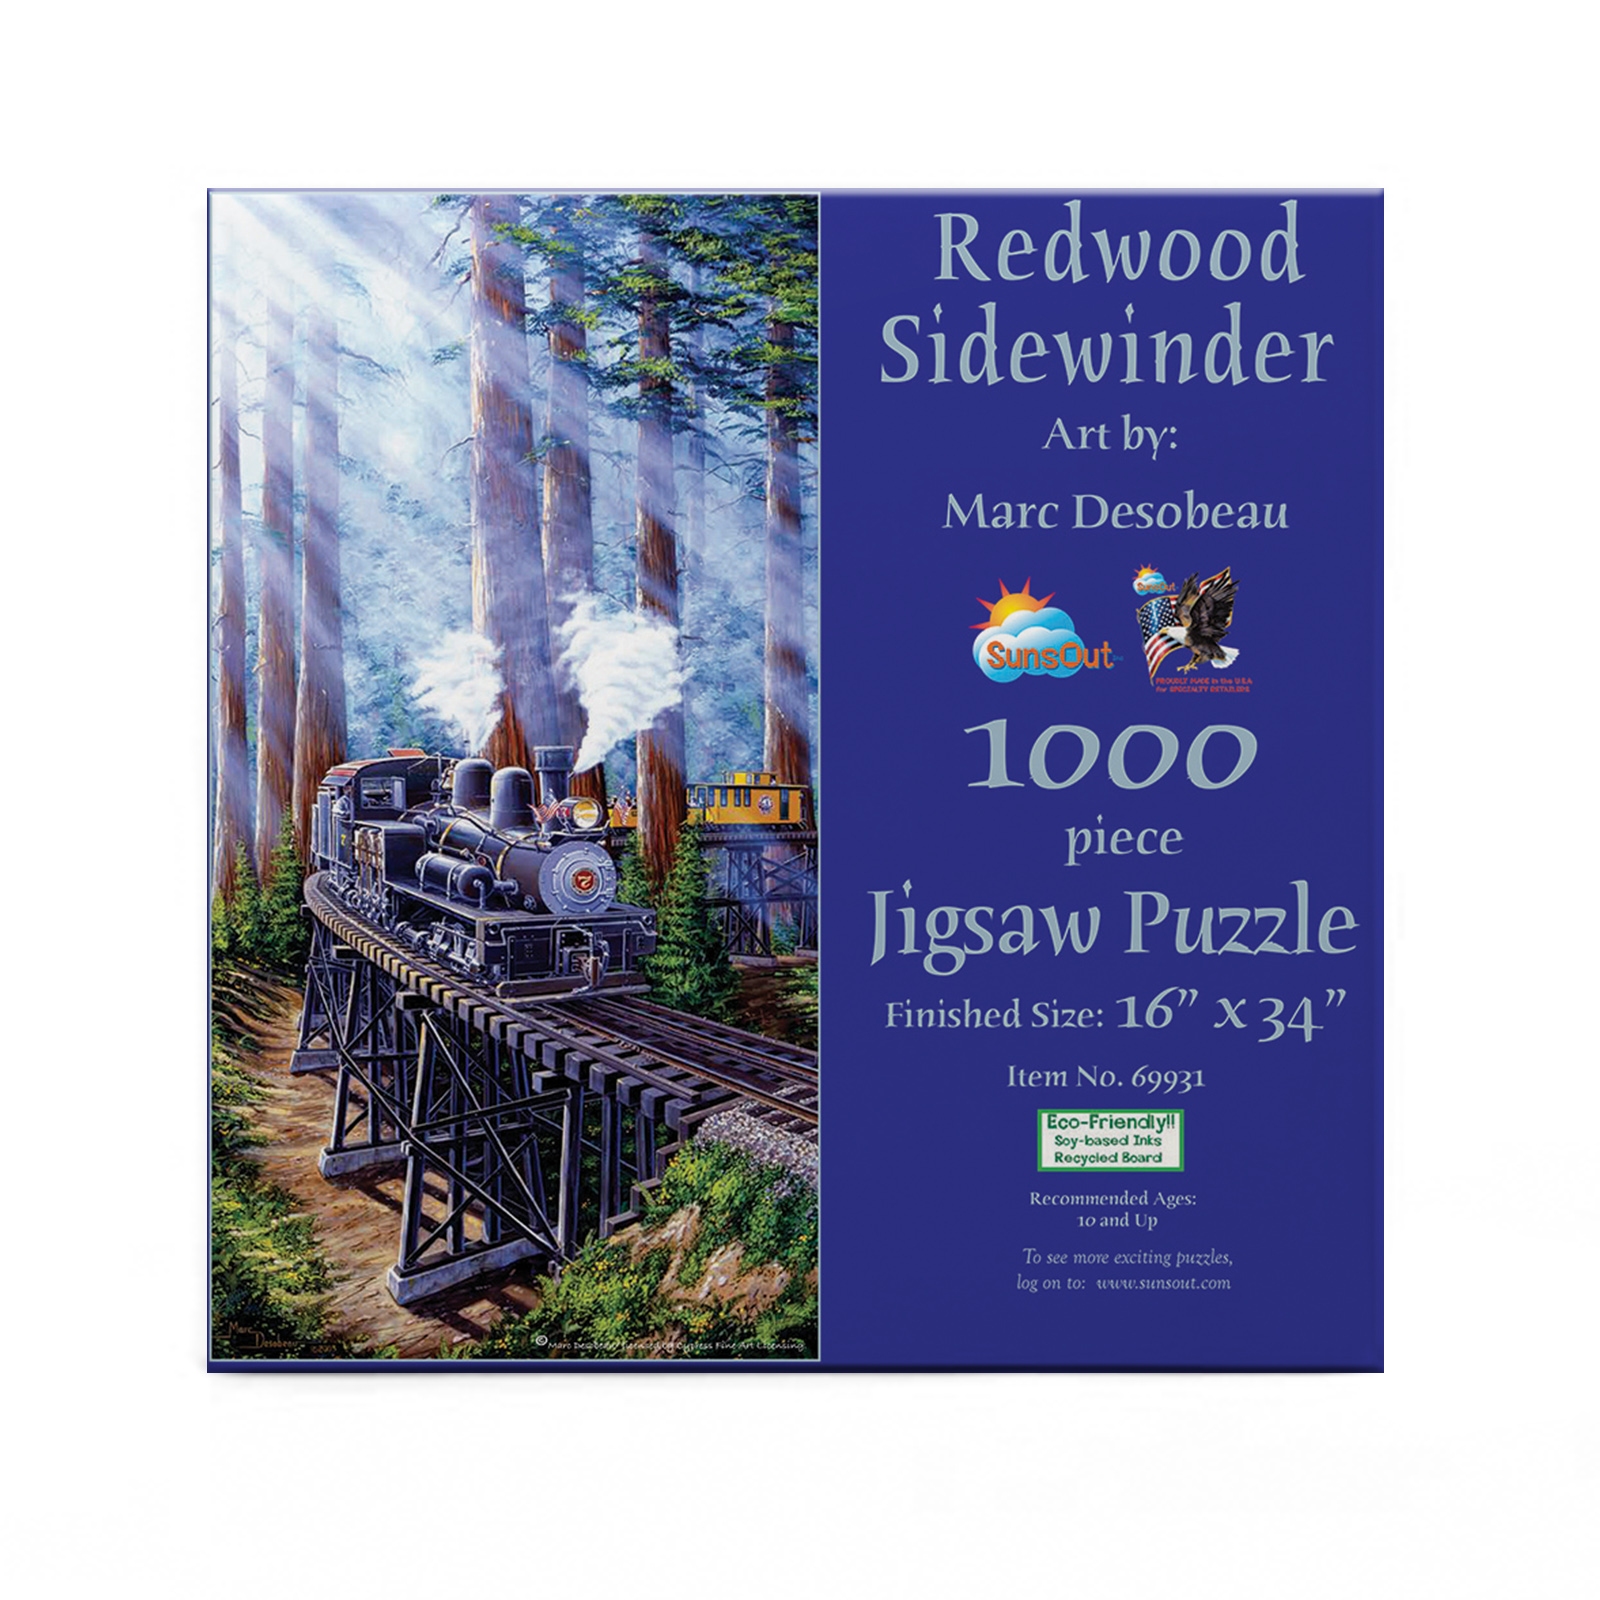 Redwood Sidewinder